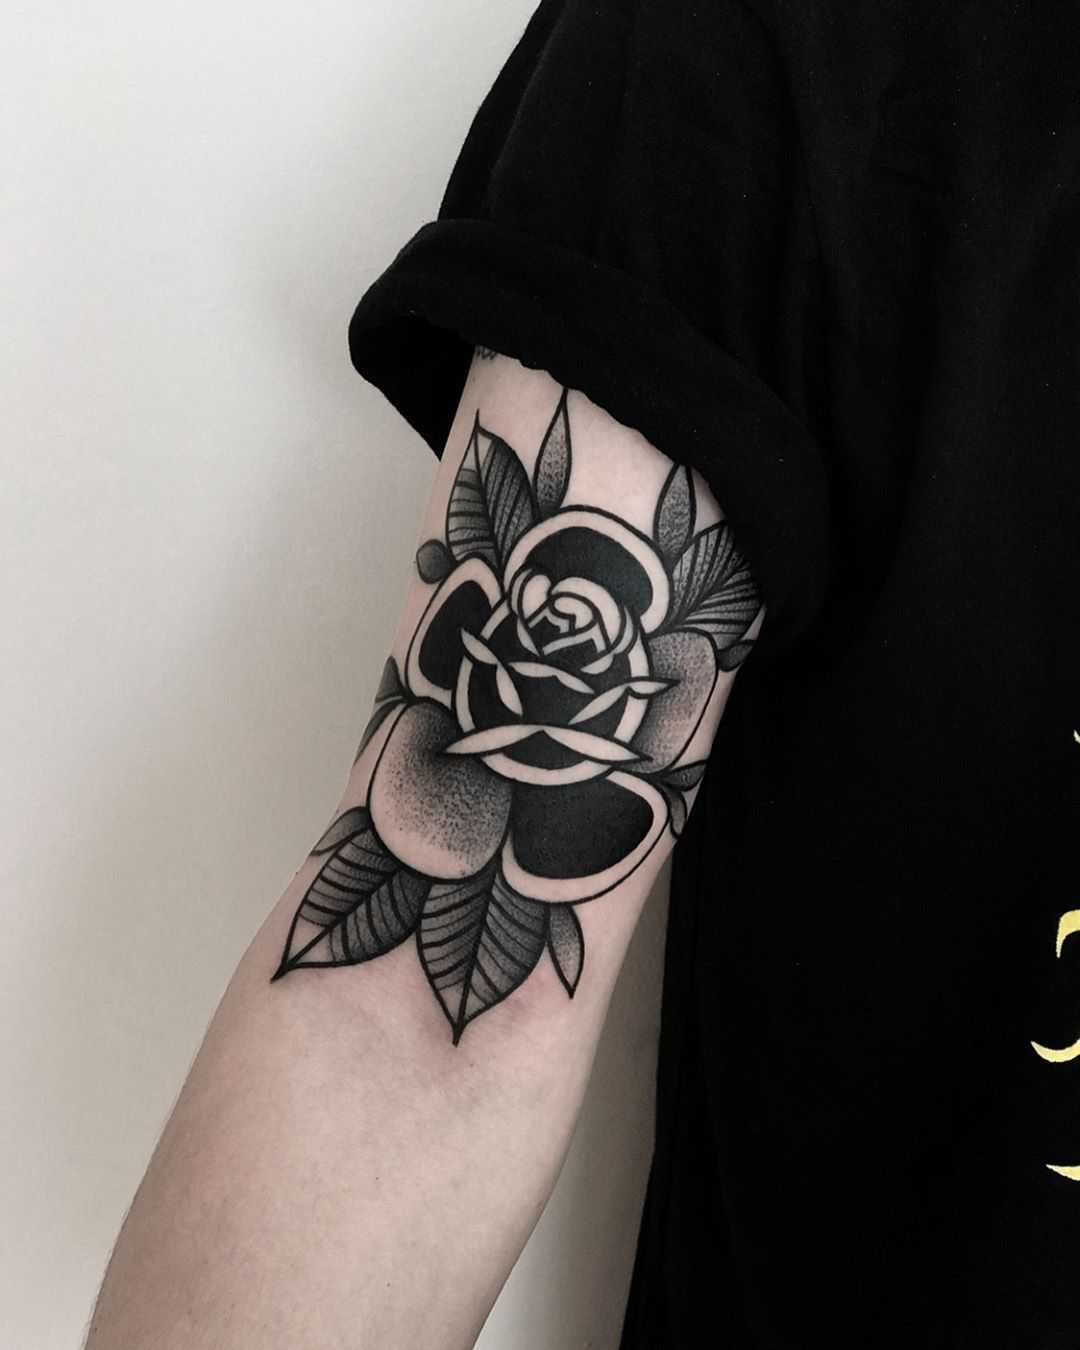 Black rose on an arm by tattooist Alejo GMZ